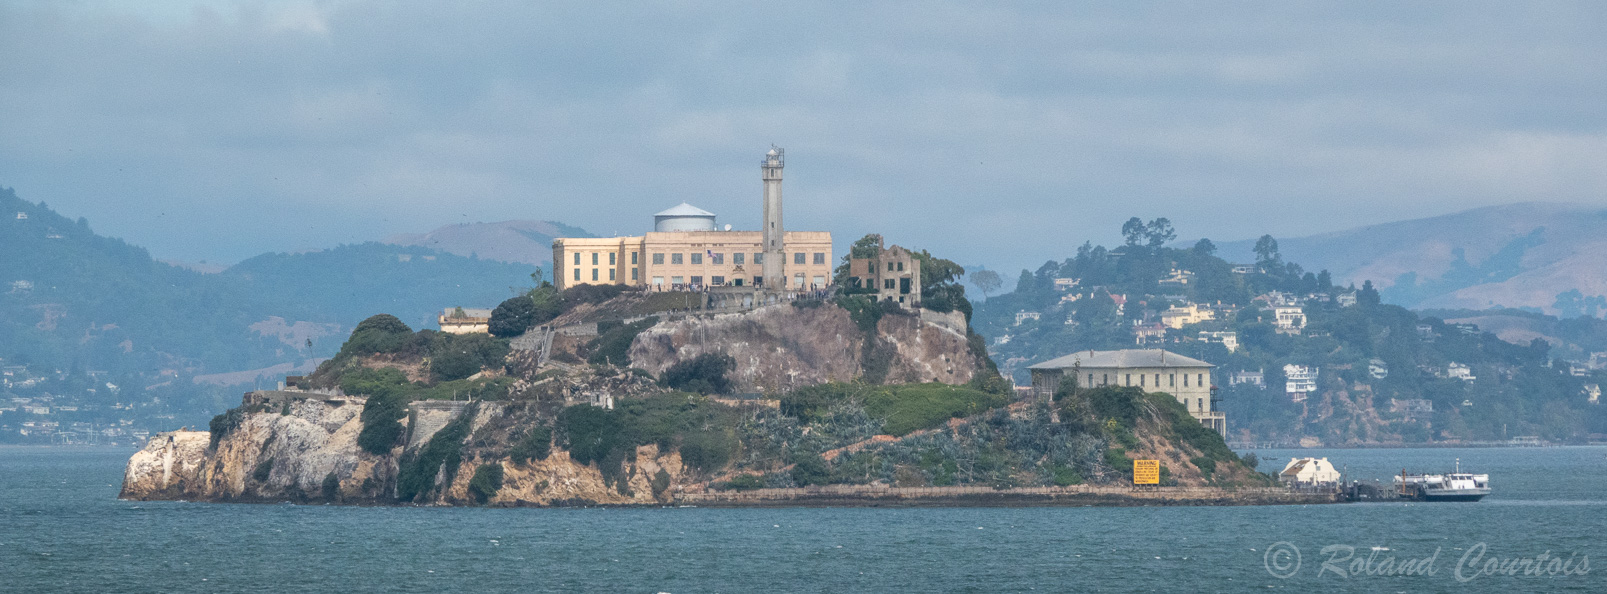 .... l'île d'Alcatraz, célèbre prison devenue un musée.